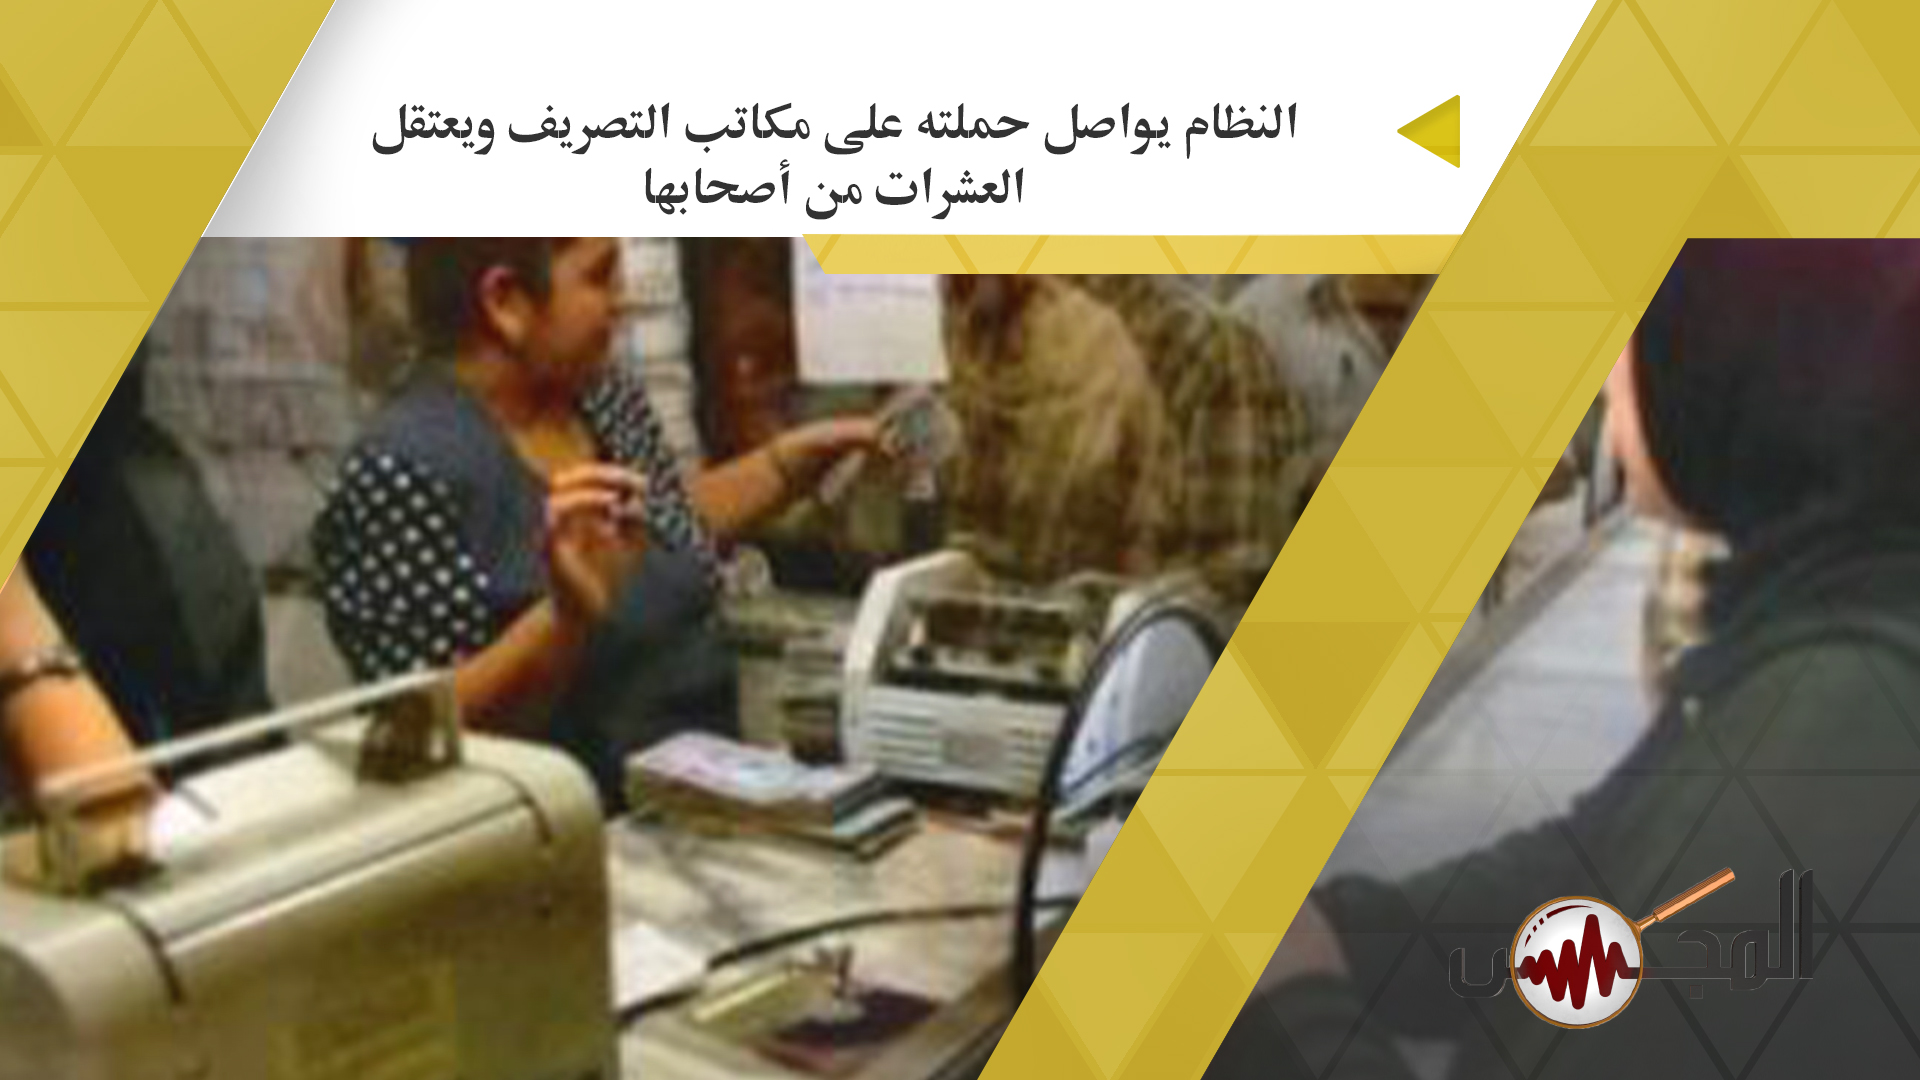 النظام يواصل حملته على مكاتب التصريف ويعتقل العشرات من أصحابها